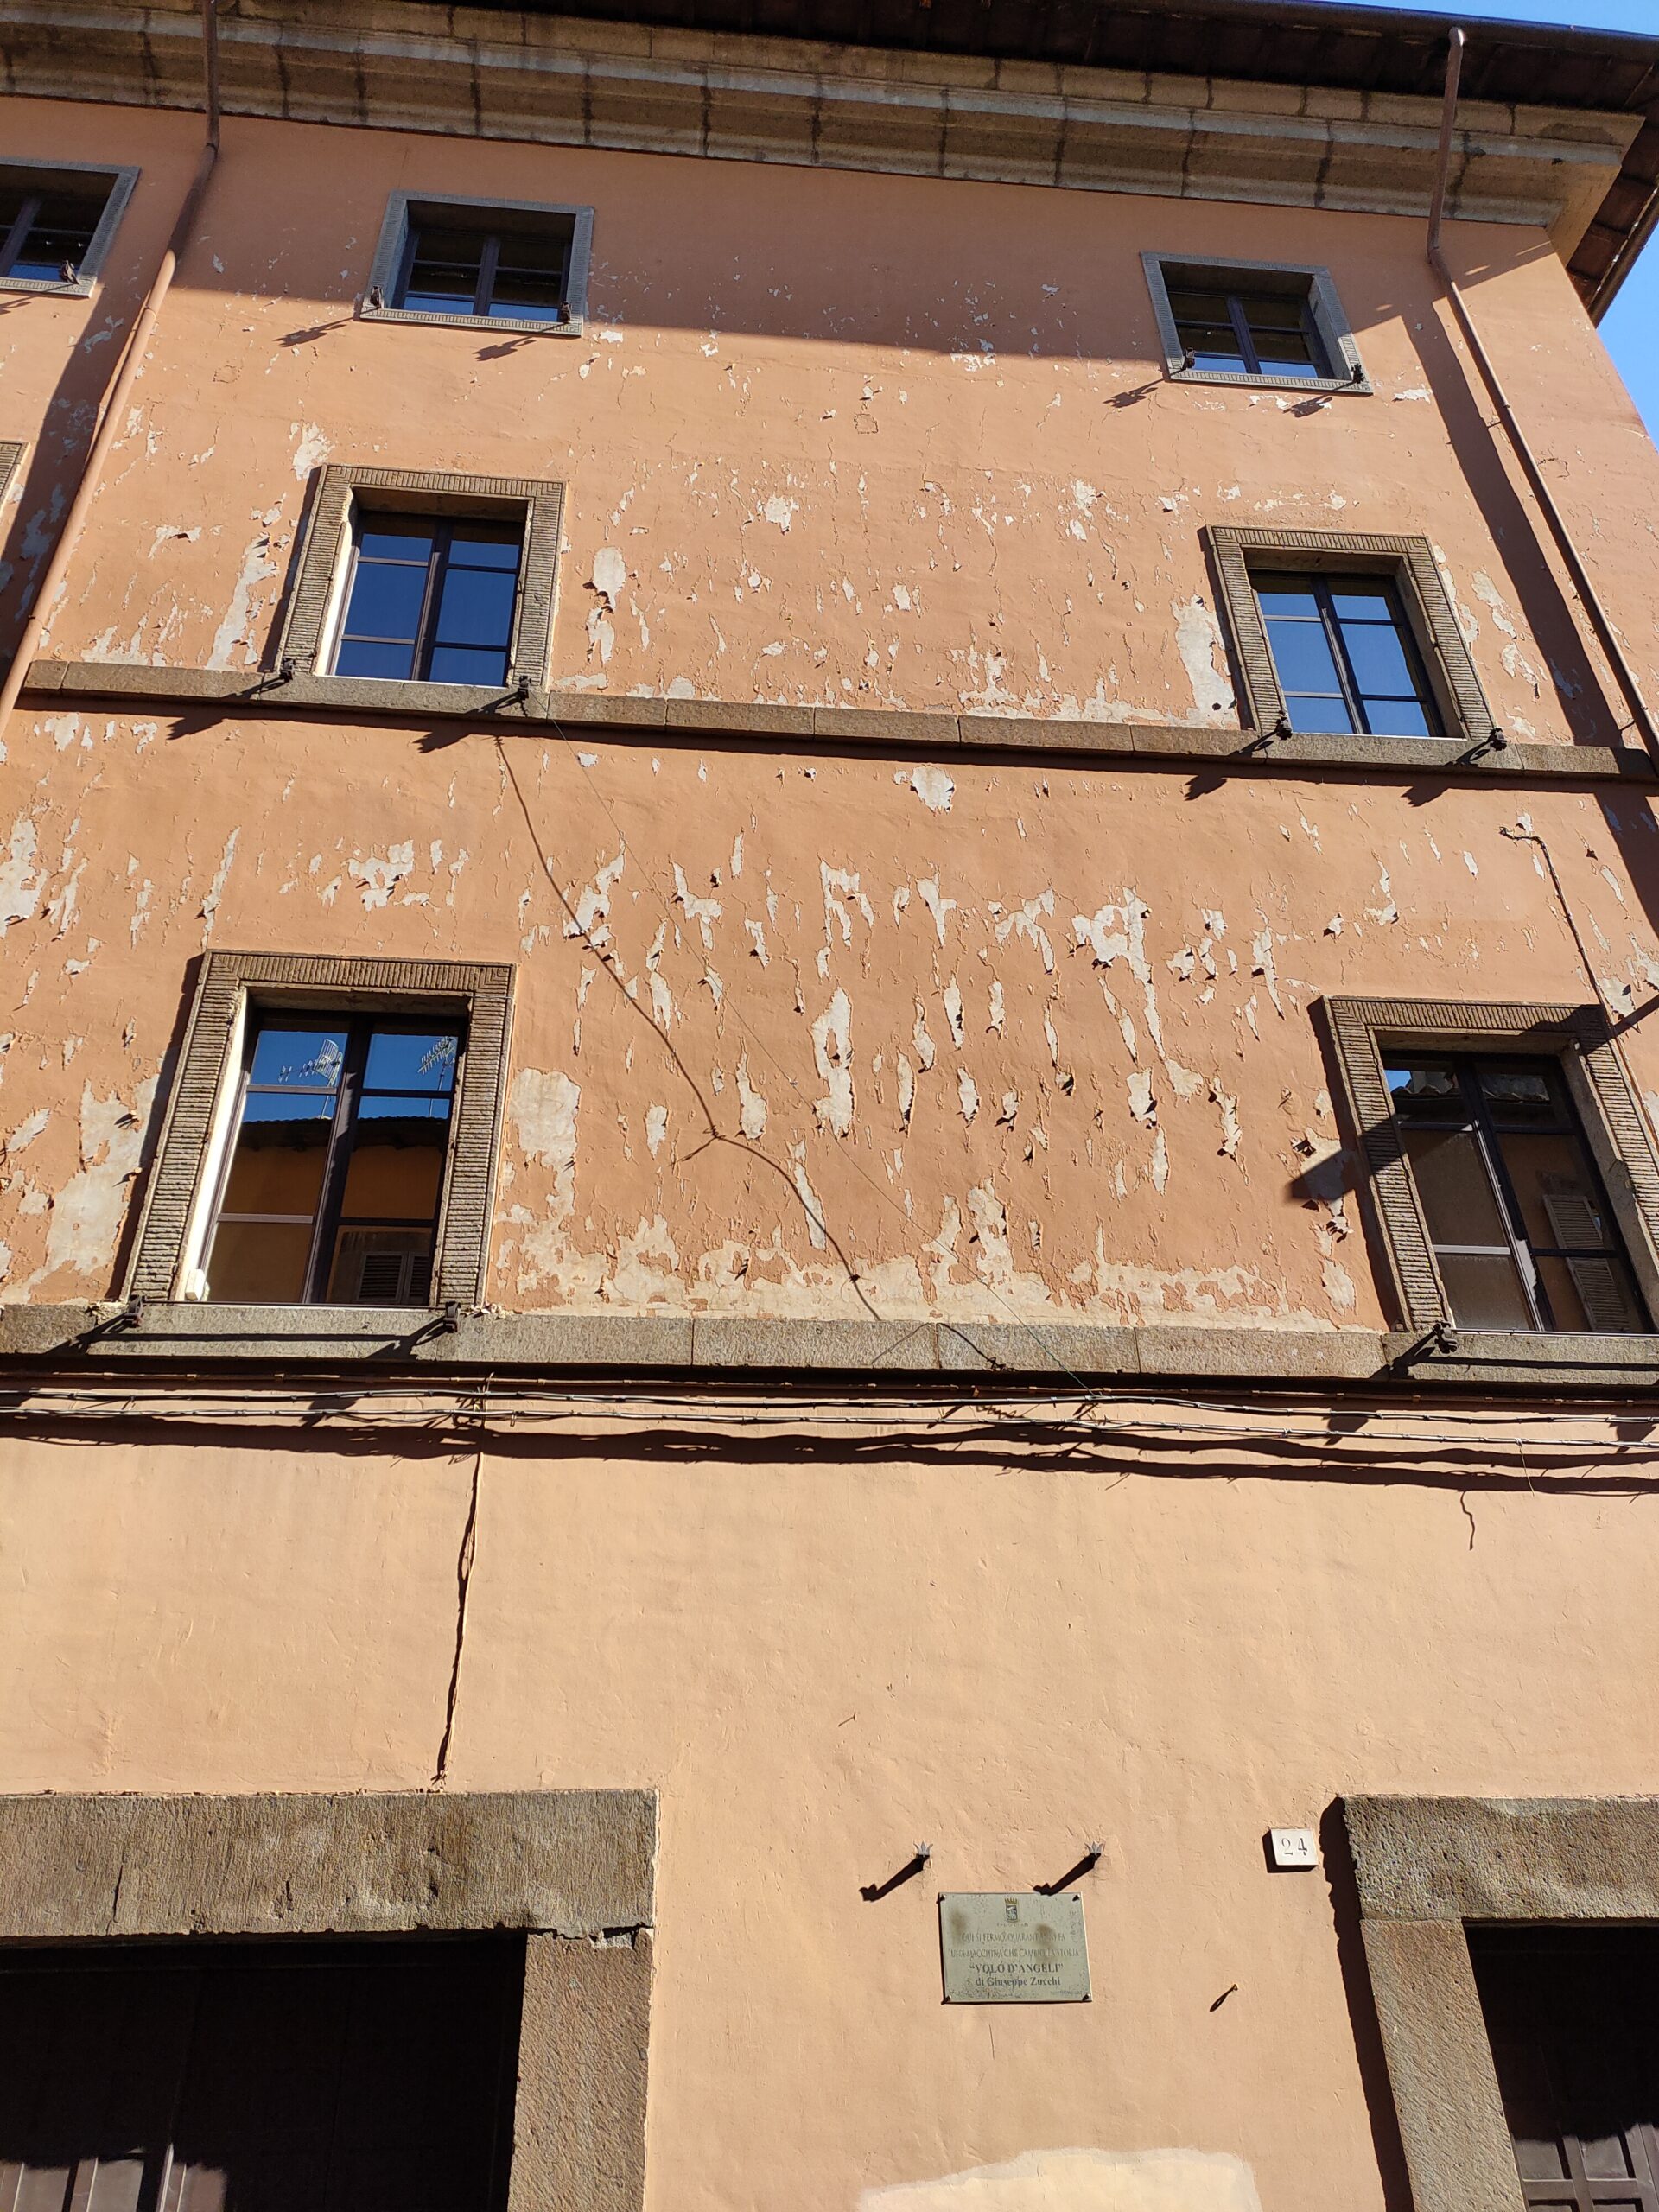 Viterbo, il degrado continua, Palazzo della Provincia, la facciata su Via Cavour in condizioni pietose, una vergogna per la città